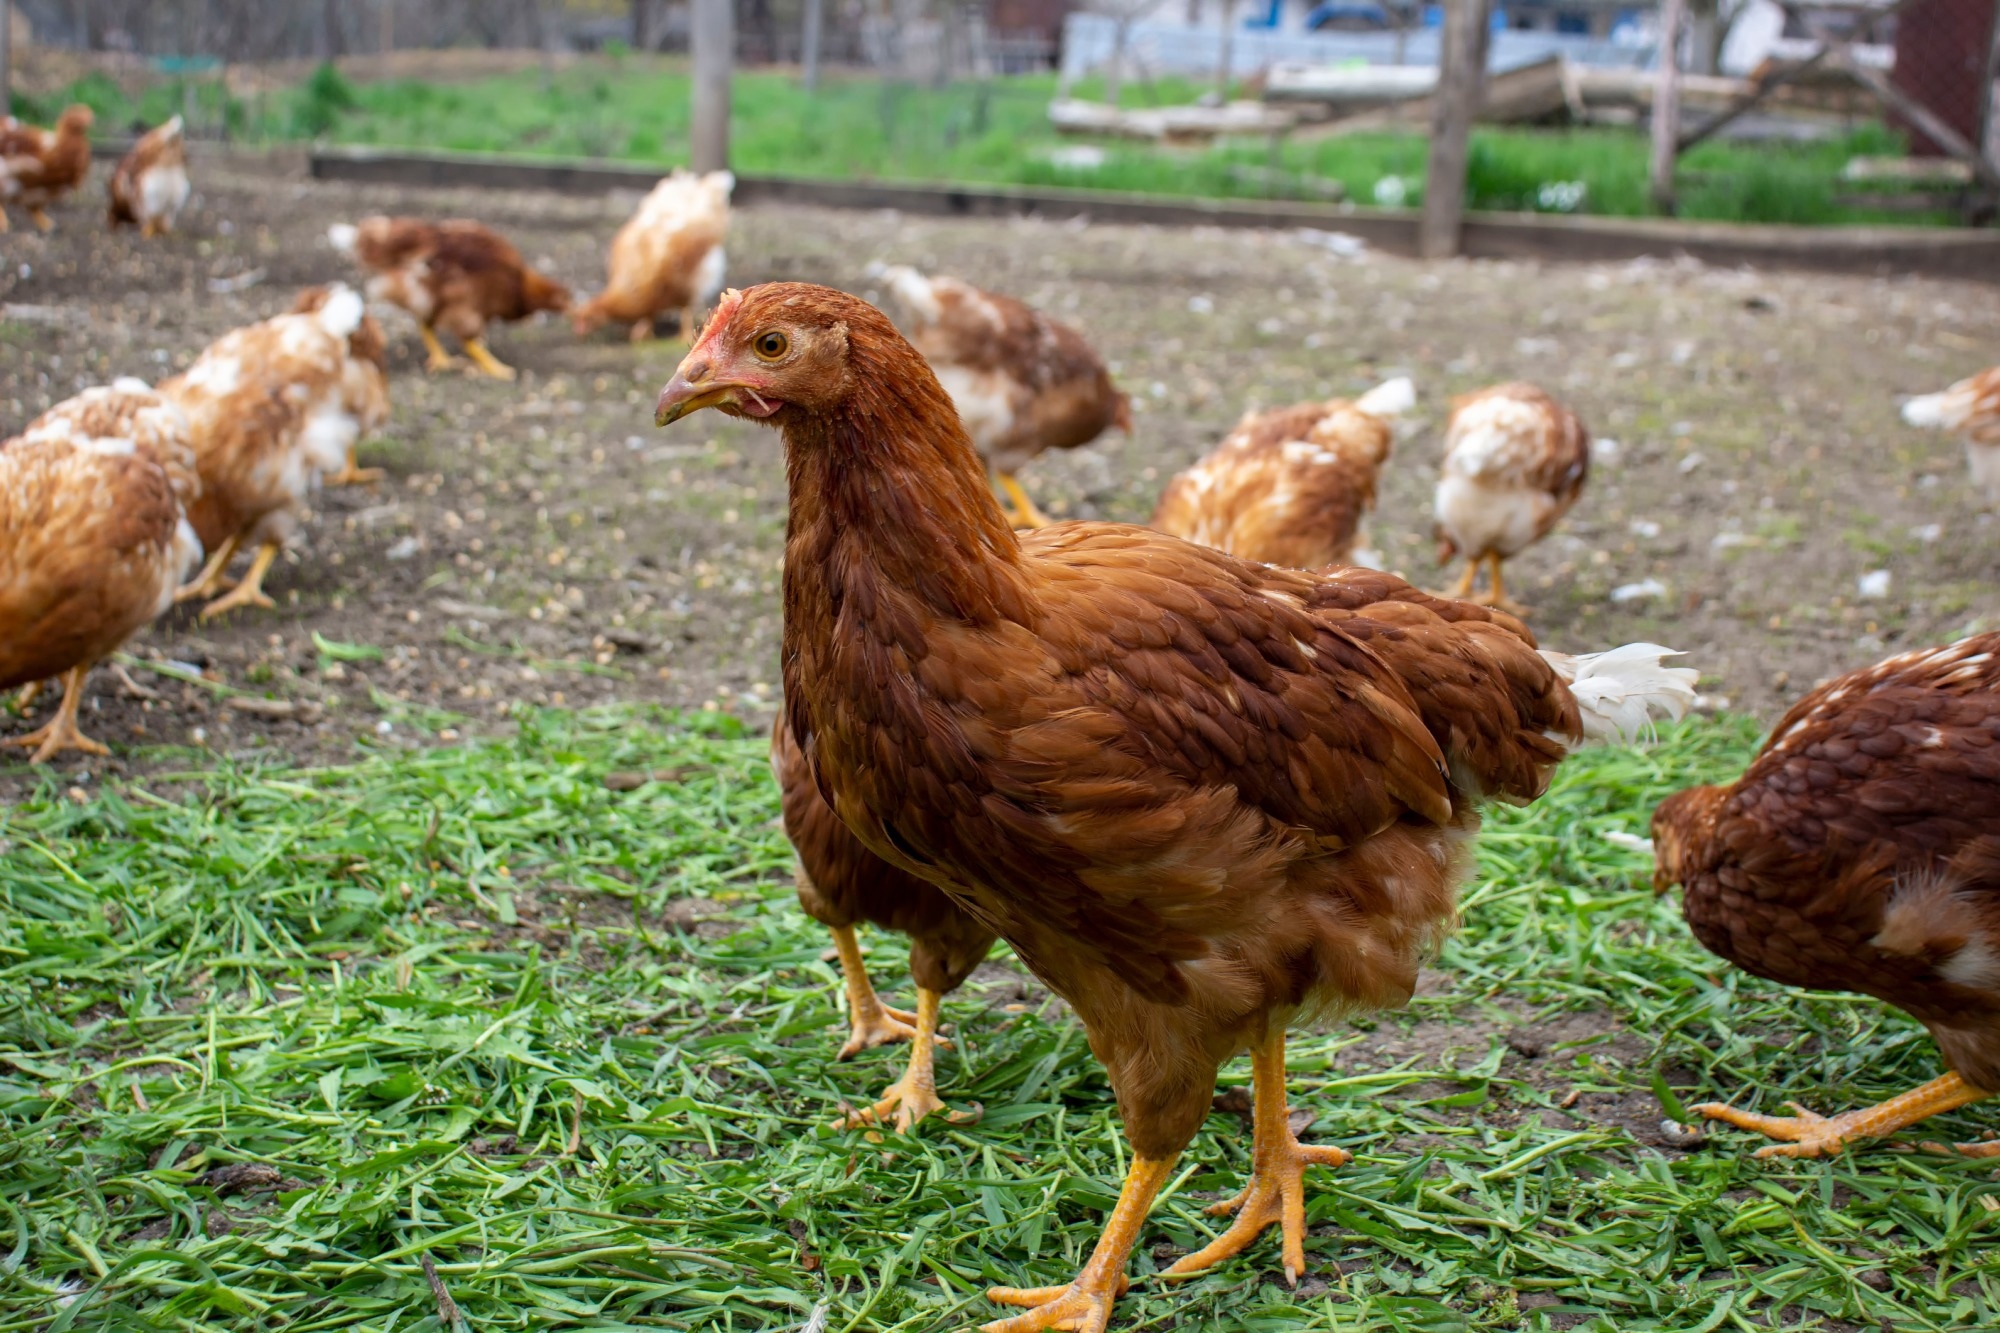 WHO reports a severe case of avian (bird) flu in Ecuador